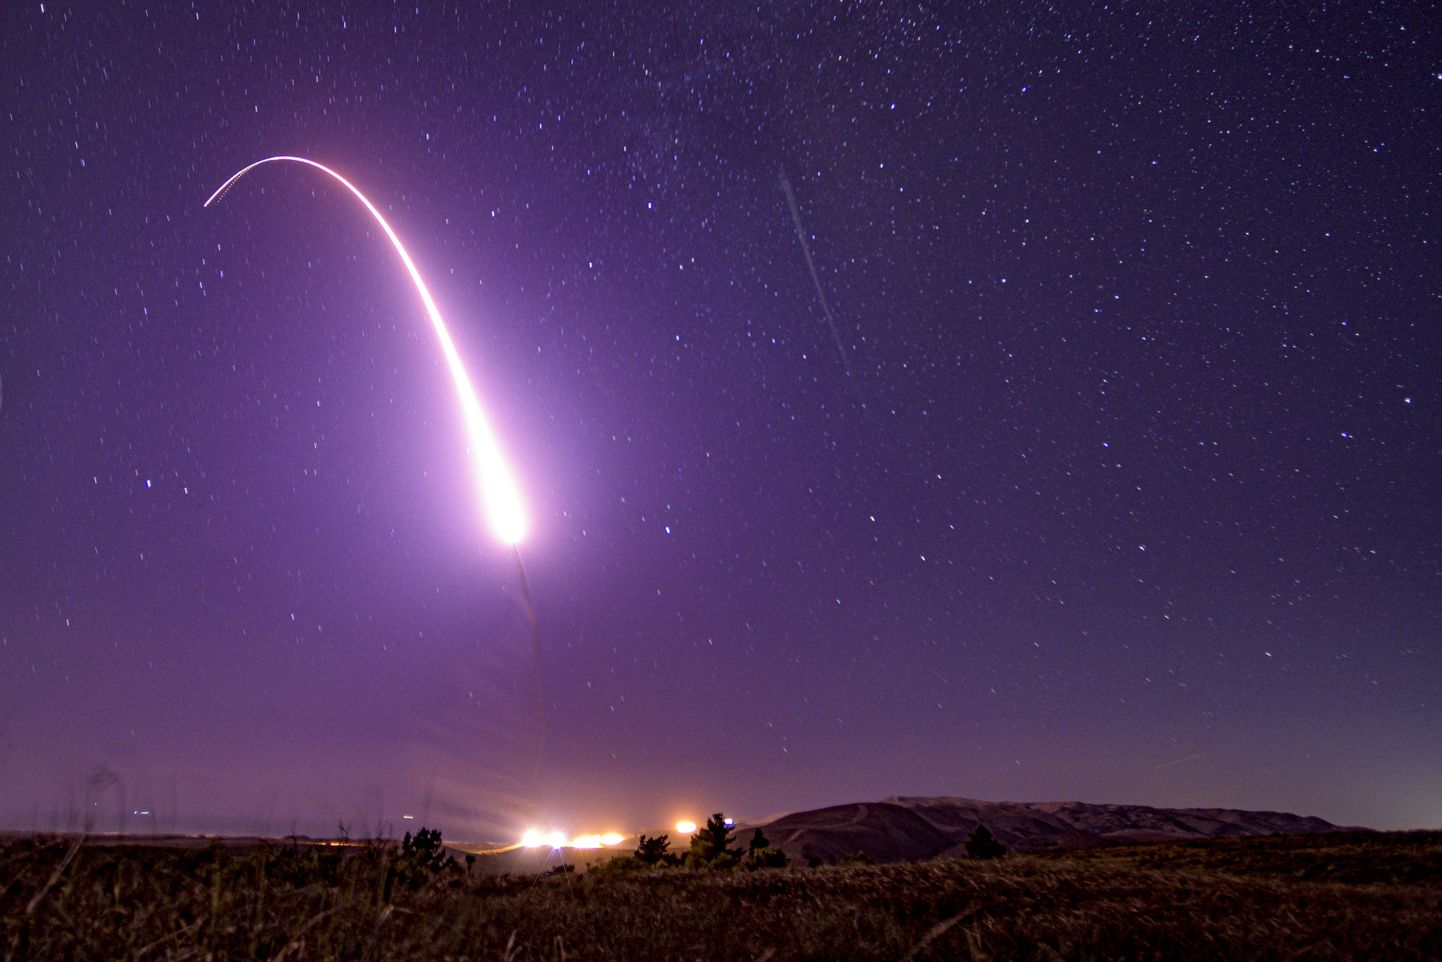 Relvamata mandritevaheline ballistiline rakett Minuteman III startis ka 2019. aastal.